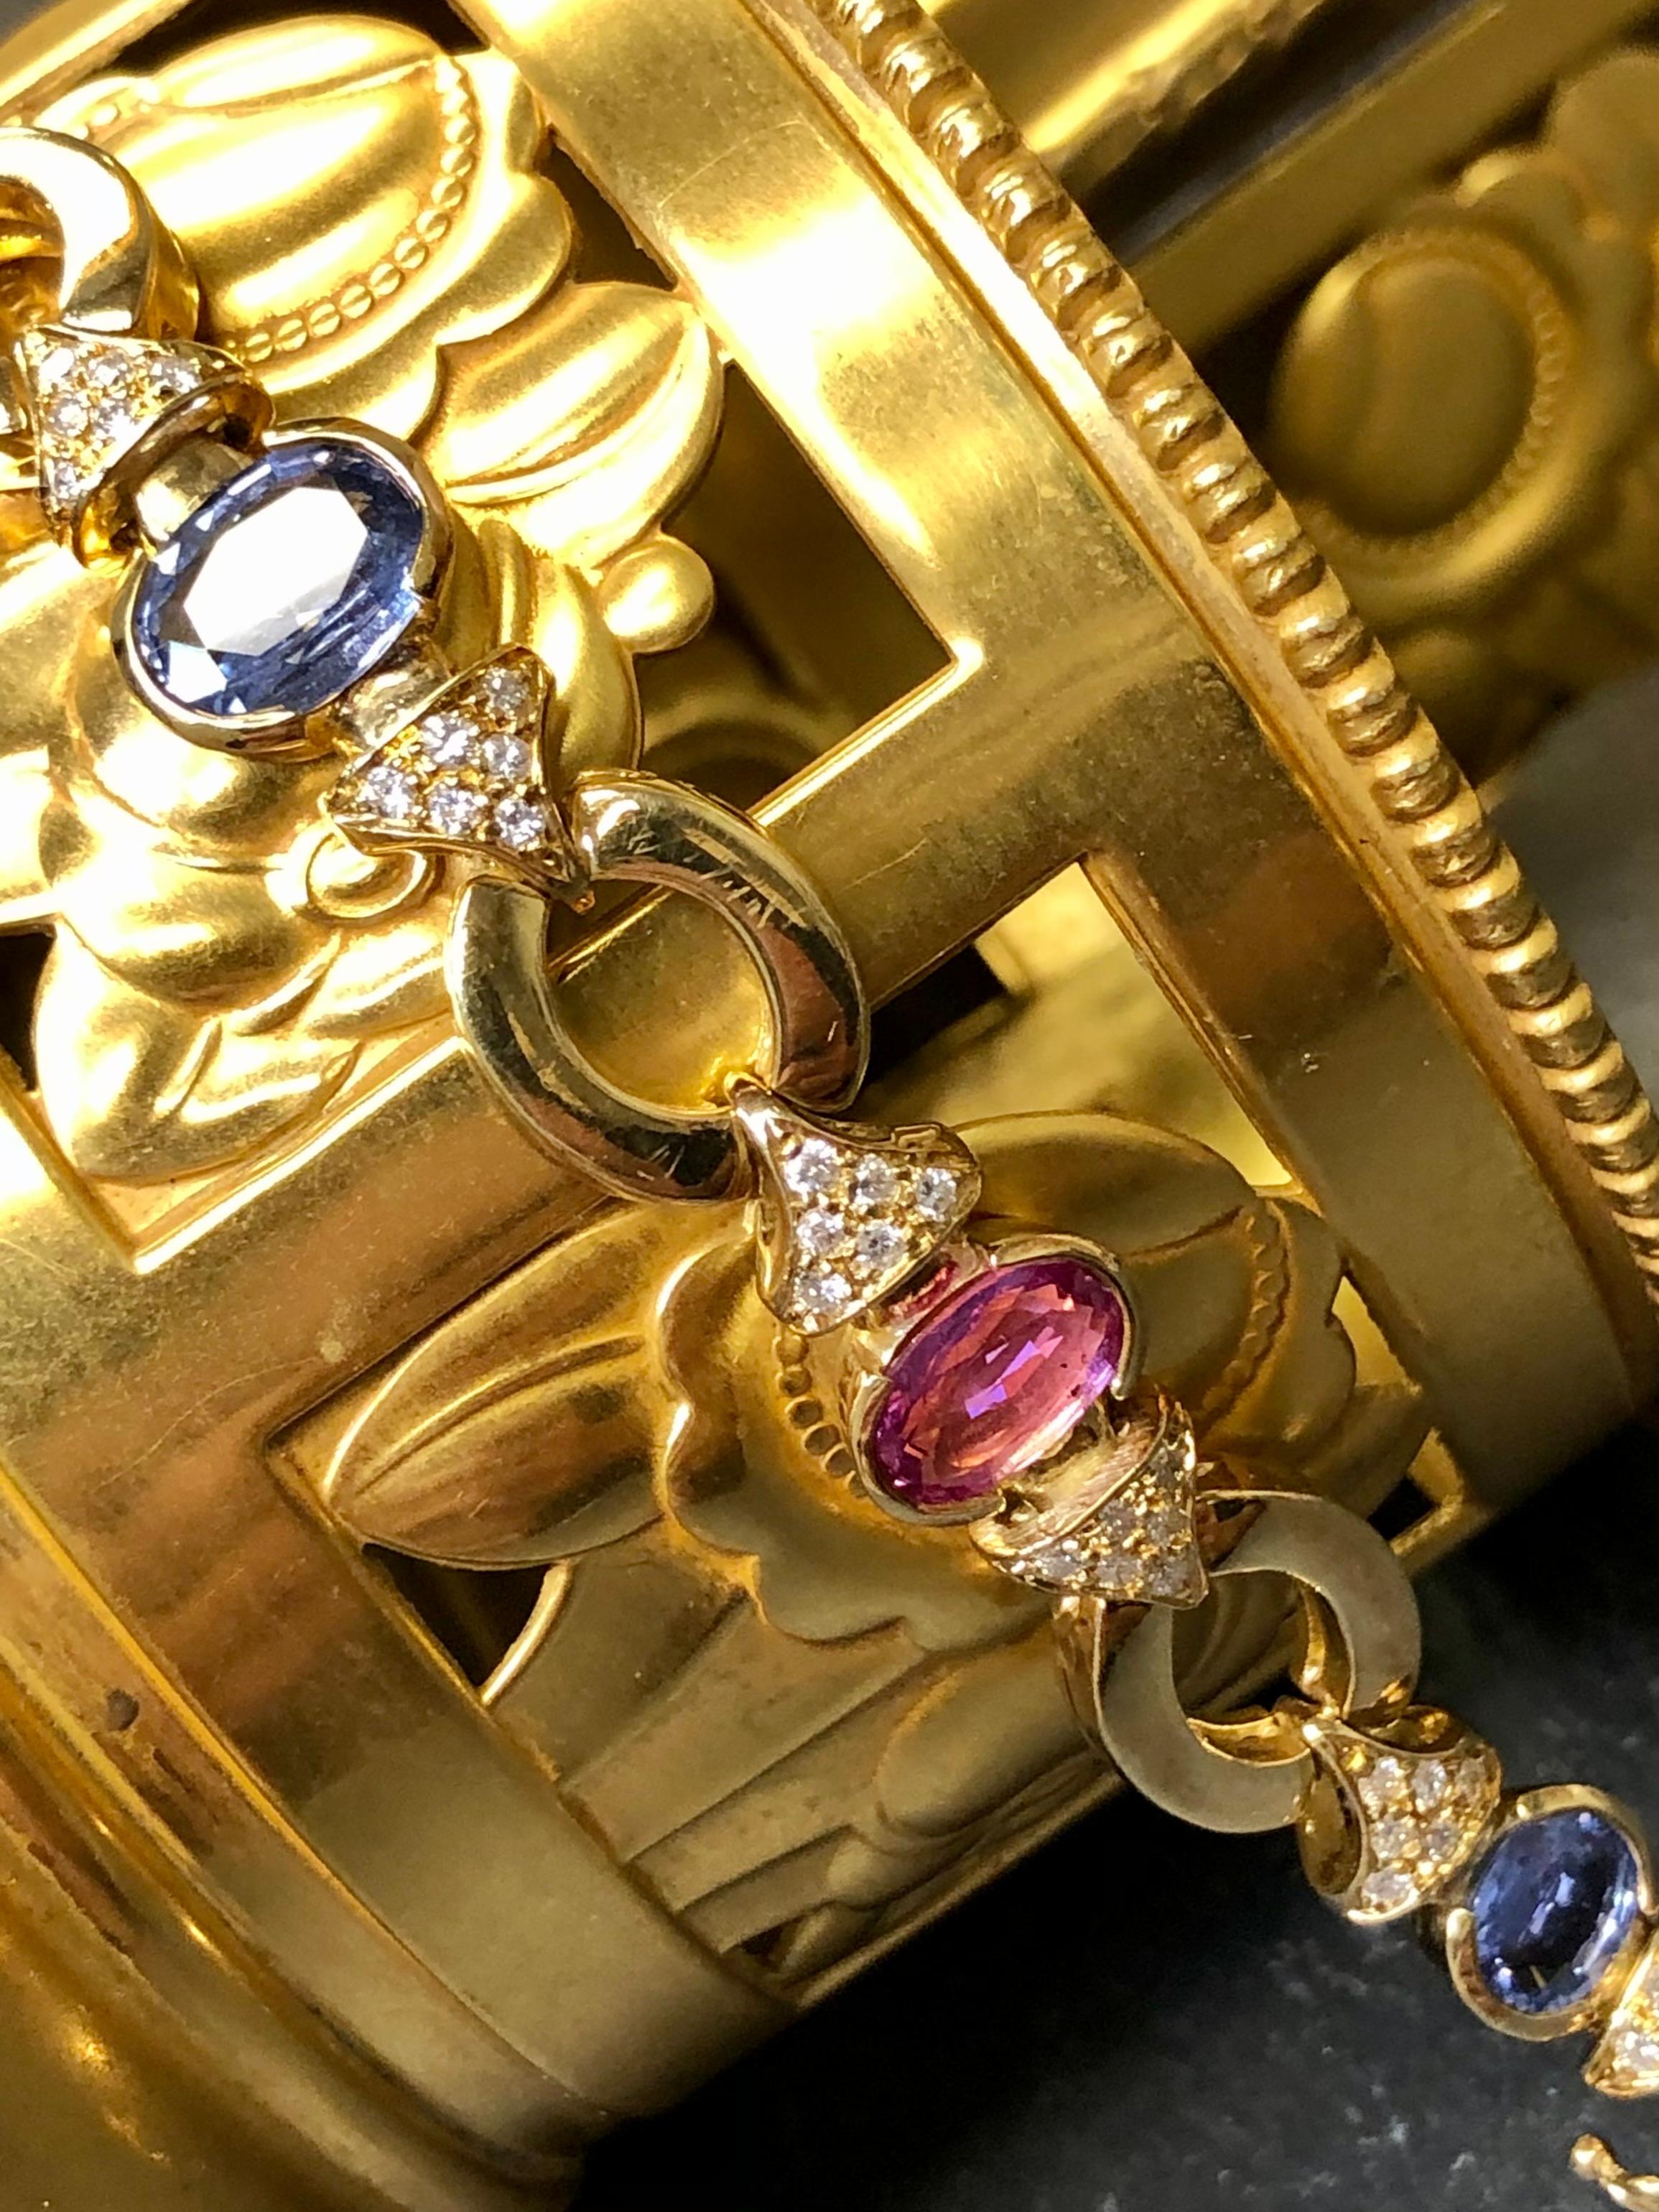 Ein modisches und gut verarbeitetes Armband aus 18 Karat Gelbgold, besetzt mit abwechselnd blauen und rosa Saphiren sowie Diamanten. Bei den rosa Saphiren gibt es 3 Steine mit einem Gewicht von 1ct, 1,11ct und 1,62ct. Bei den blauen Saphiren gibt es